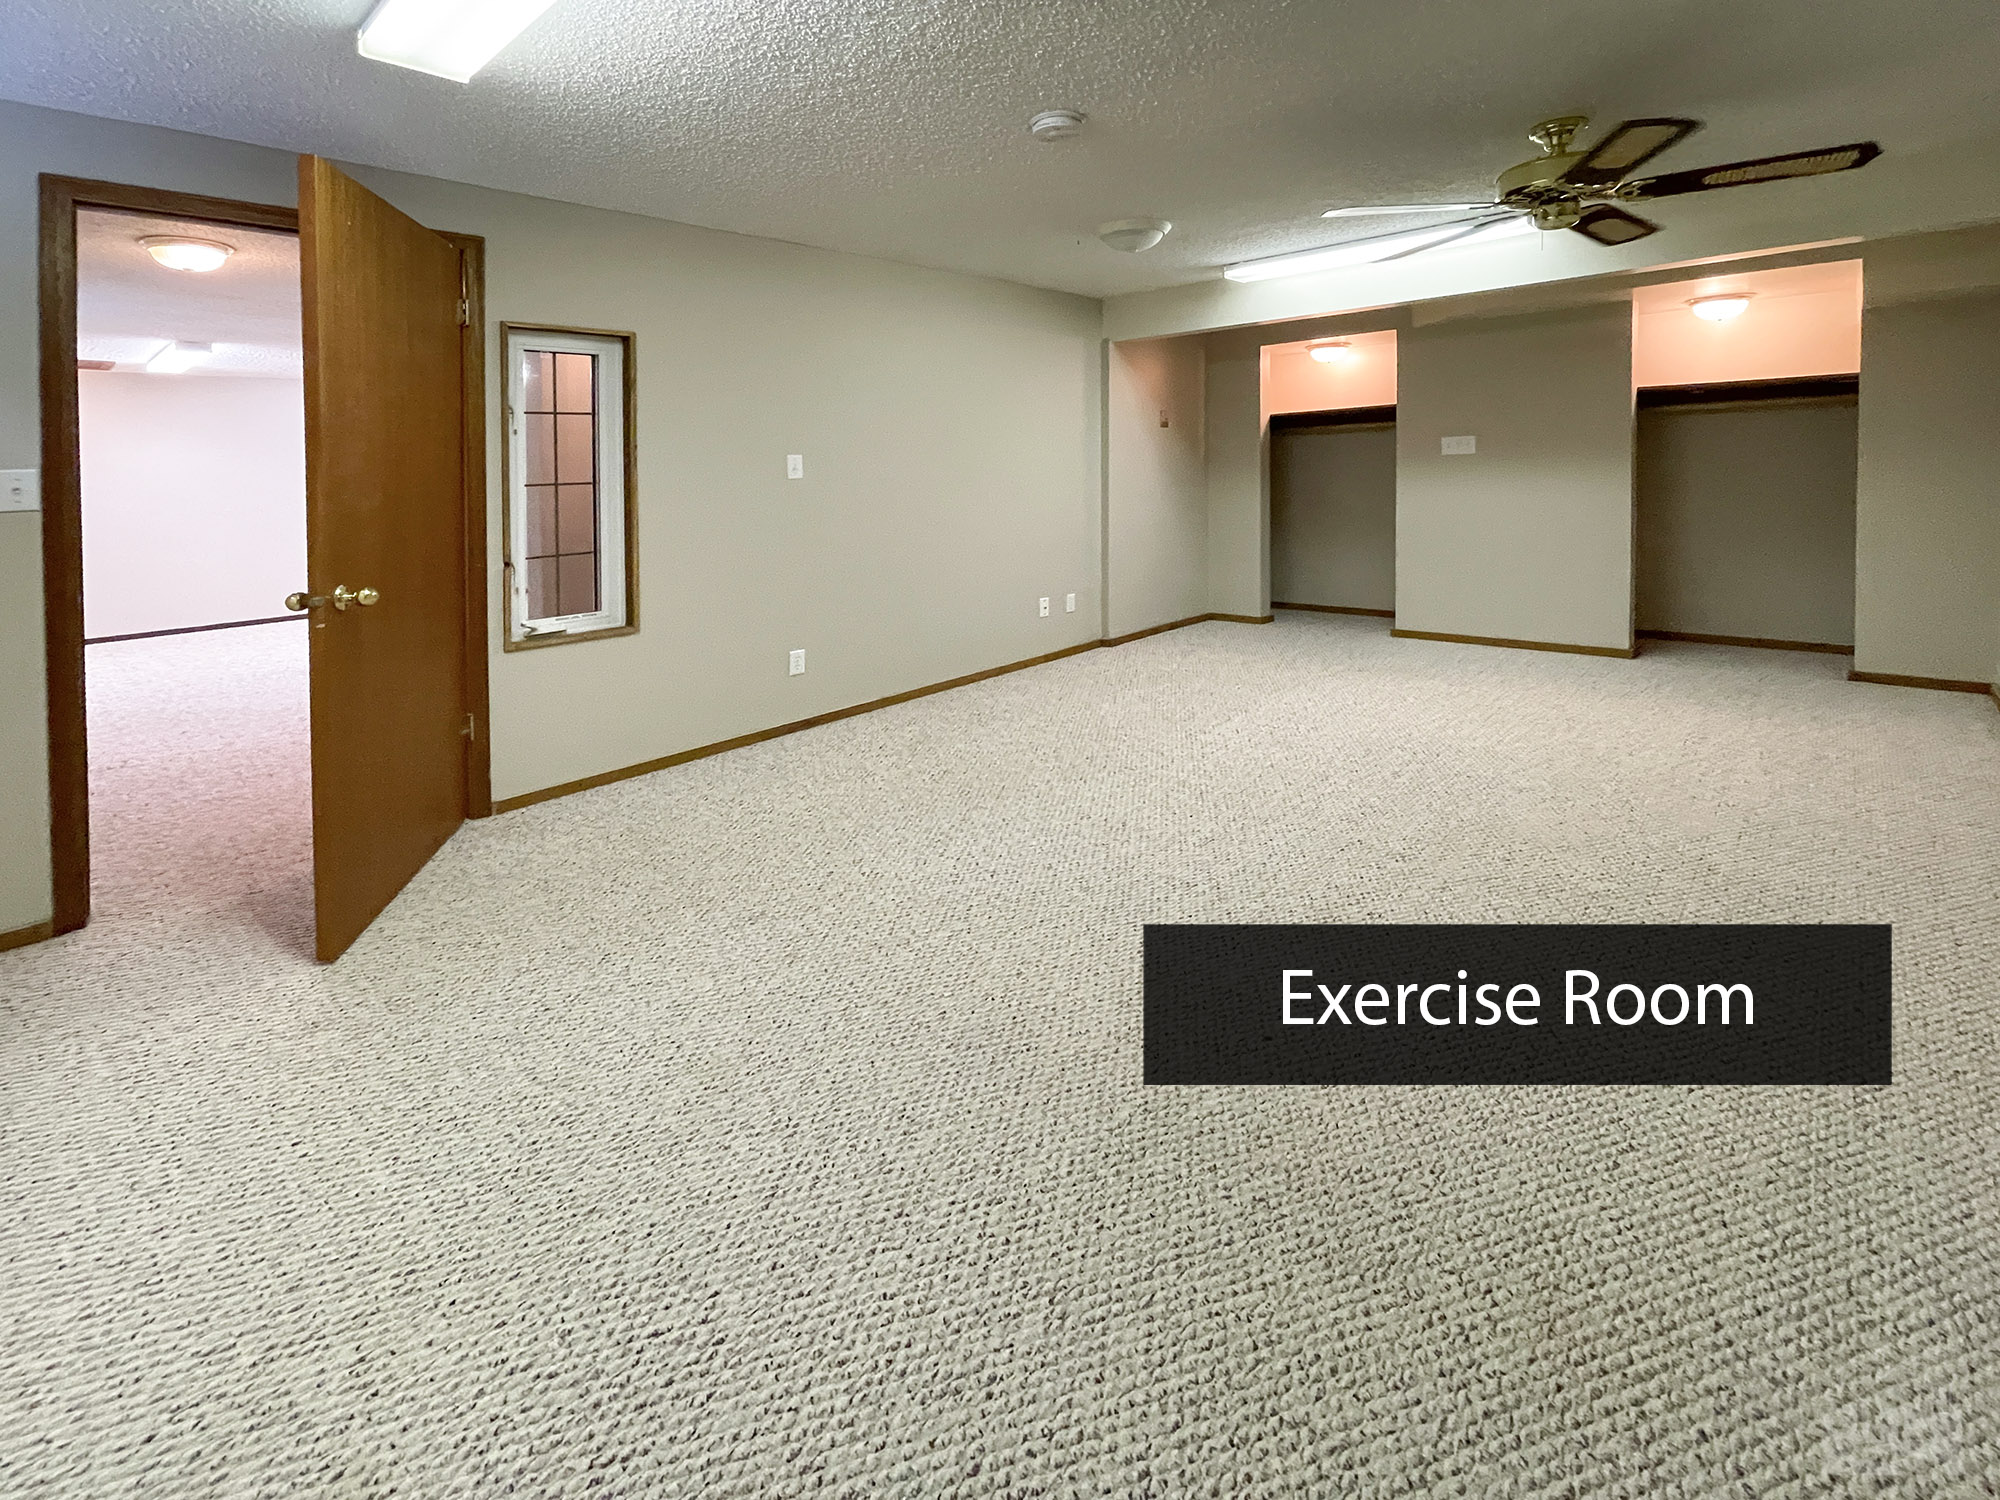 Exercise Room Key Image